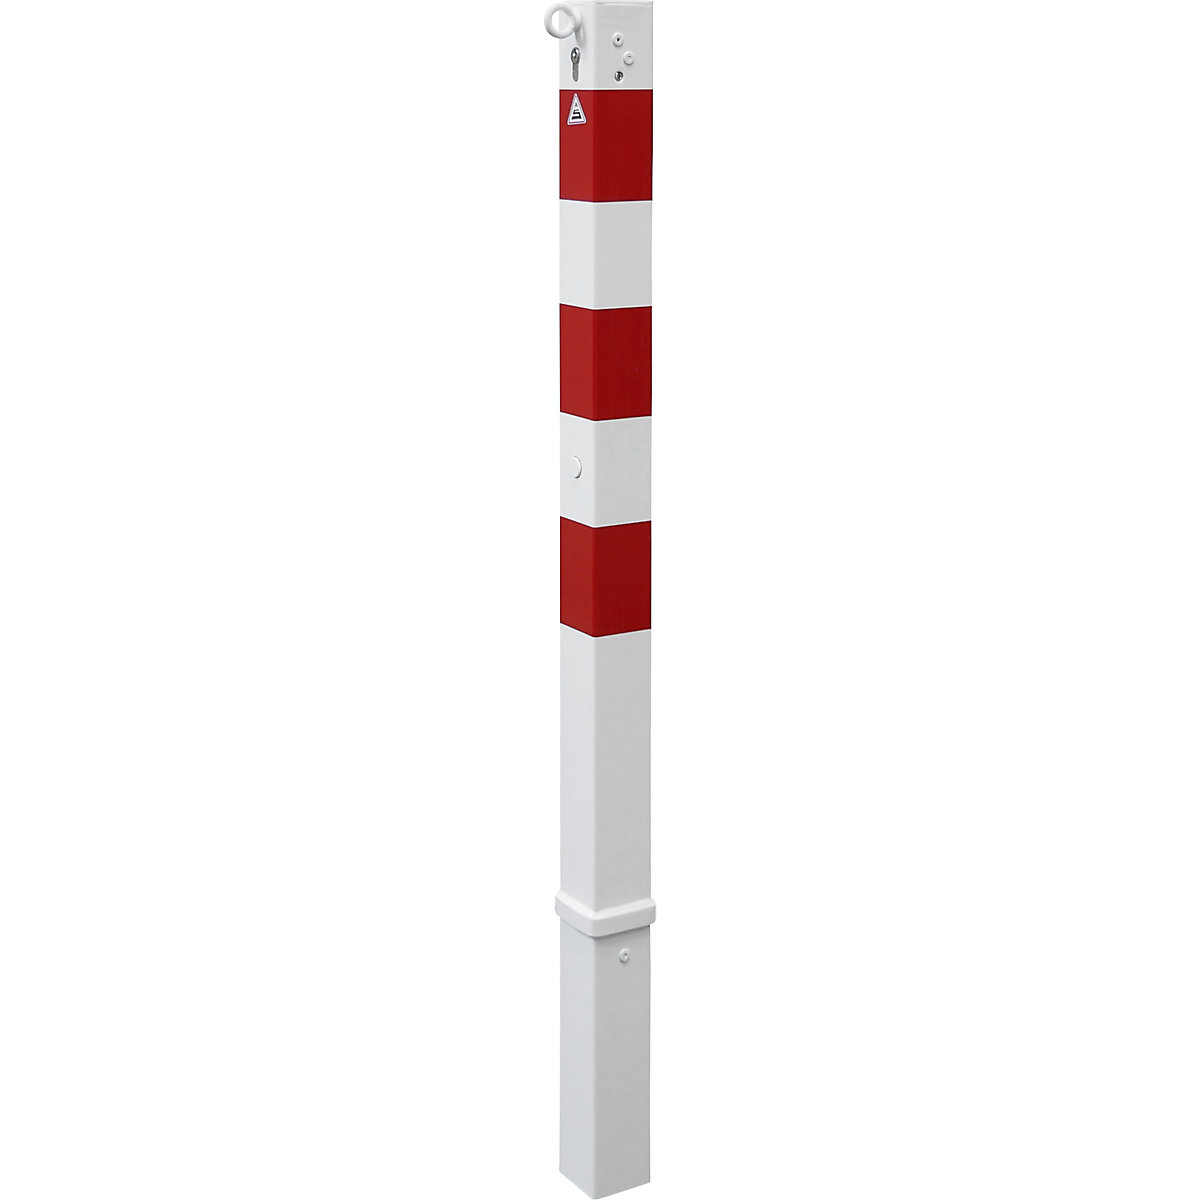 Stupić za ograđivanje, 70 x 70 mm, u bijelo / crvenoj boji, s mogućnošću vađenja i profilnim cilindrom, s 1 ušicom